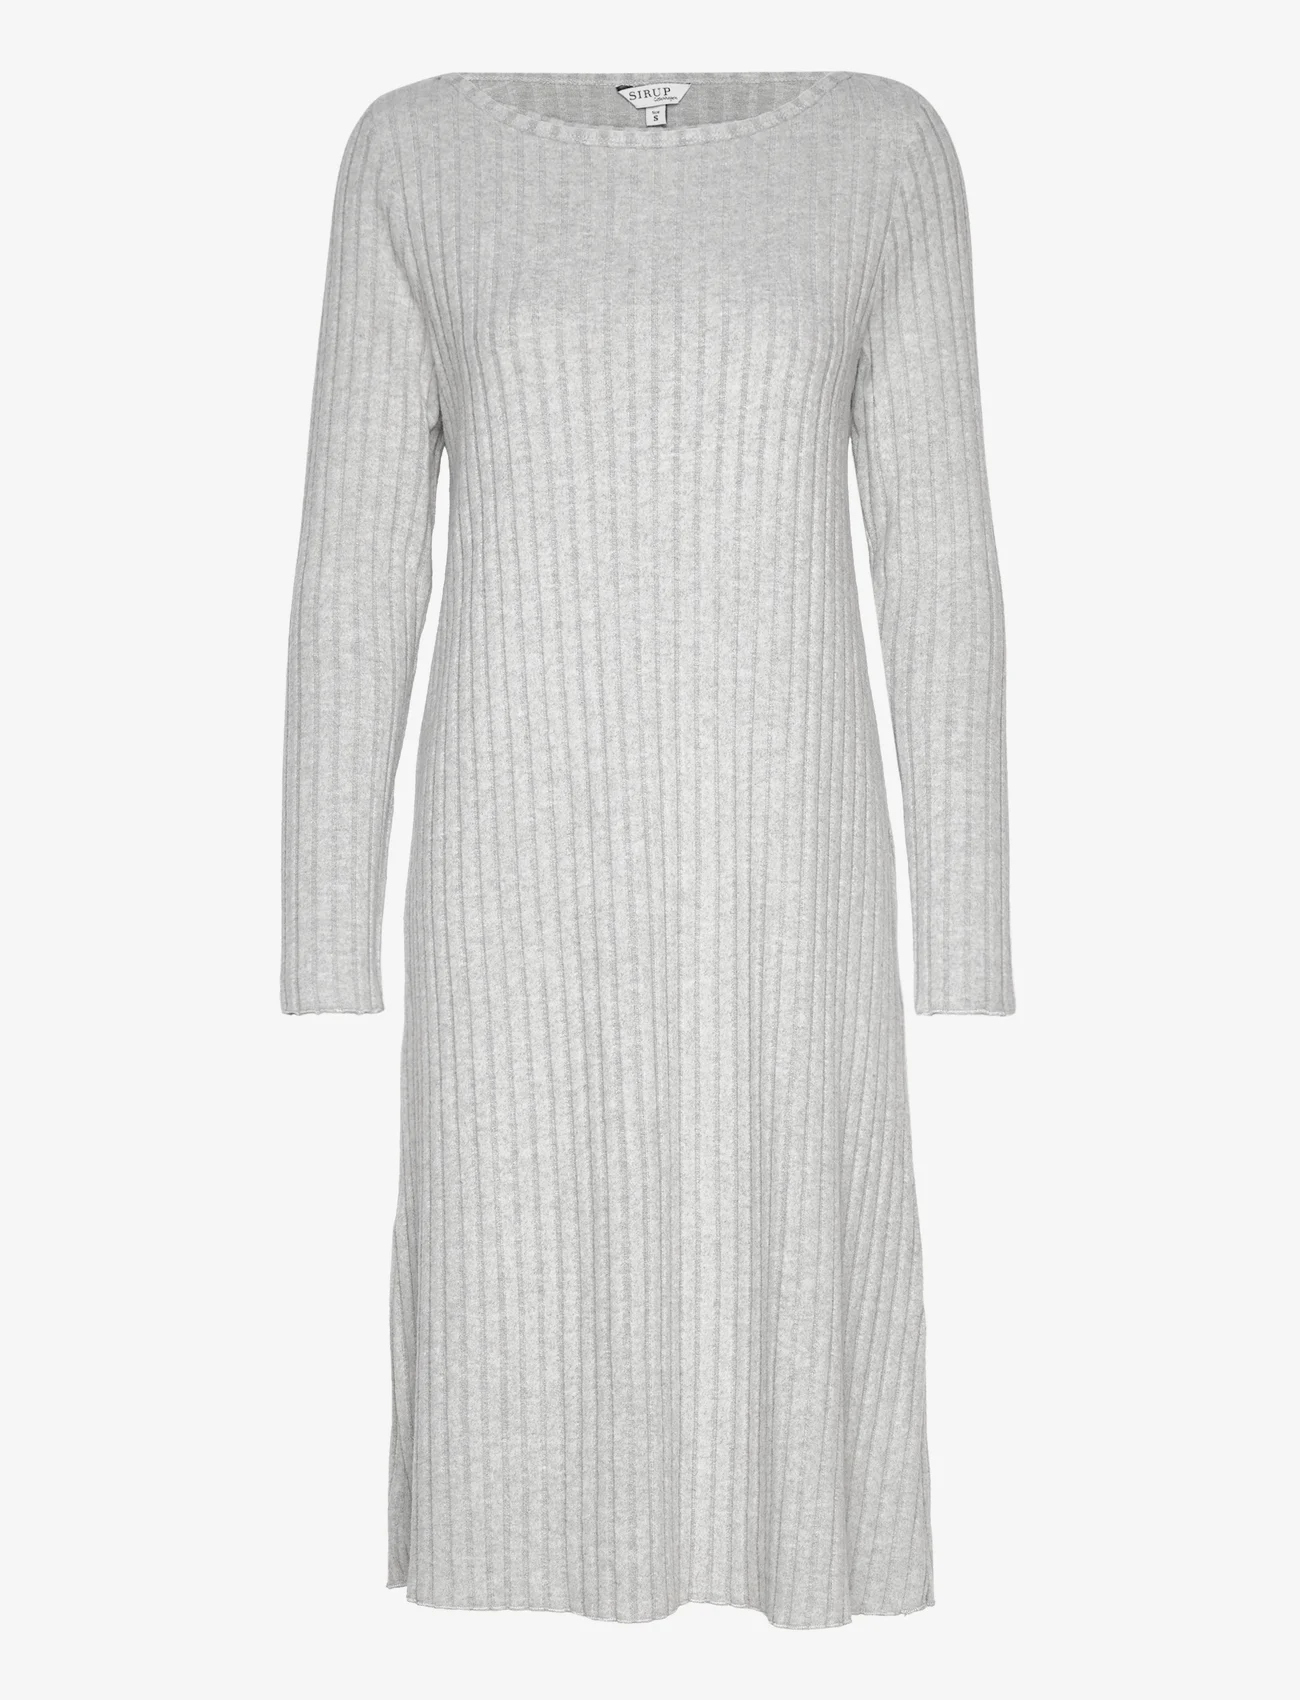 Sirup Copenhagen - Nairobi Dress - knitted dresses - grey melange - 0